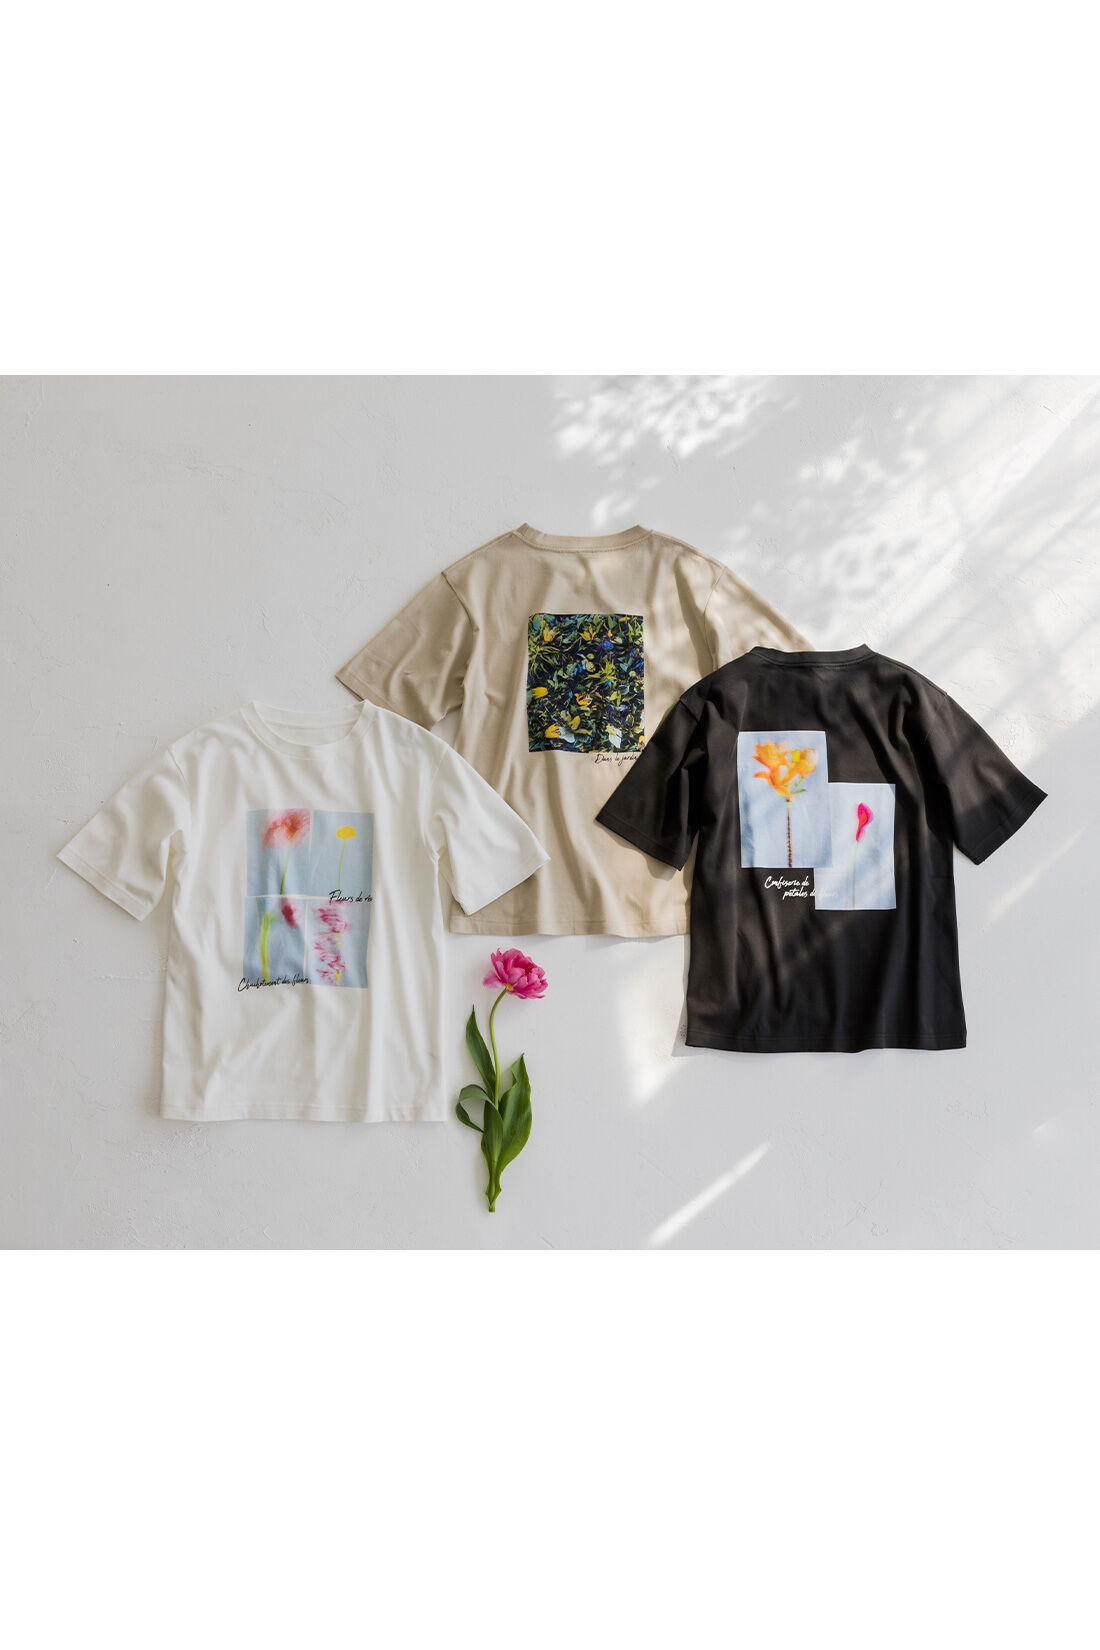 Real Stock|リブ イン コンフォート×plantica コットン100％がうれしい 花咲くフォトTシャツ〈チャコール〉|色とりどりの花のコラージュに、ポエティックなメッセージを添えて。